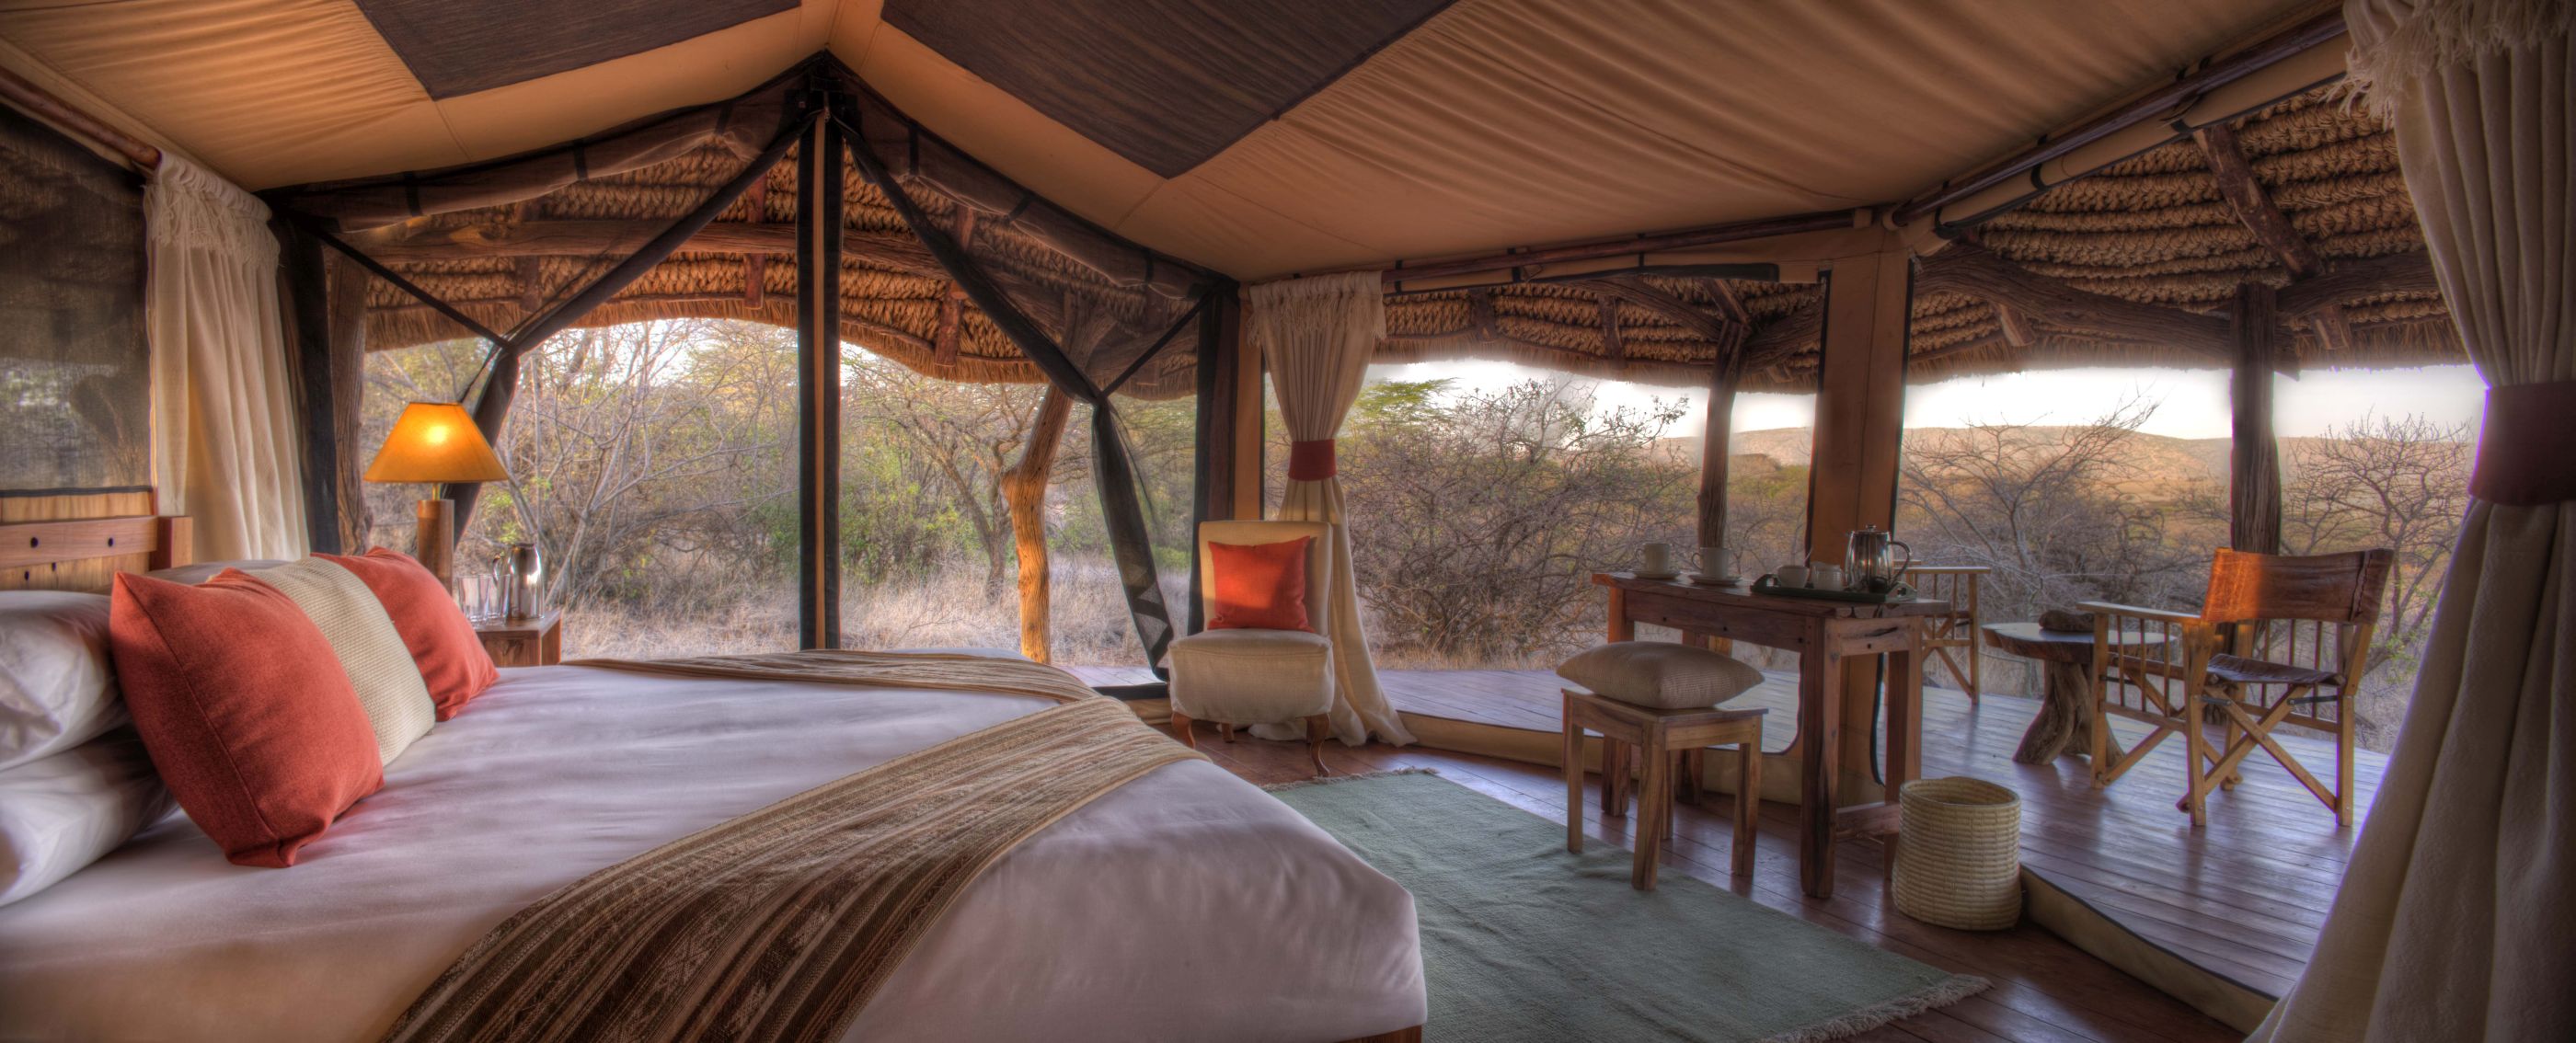 Tent interiors of Lewa Safari Camp